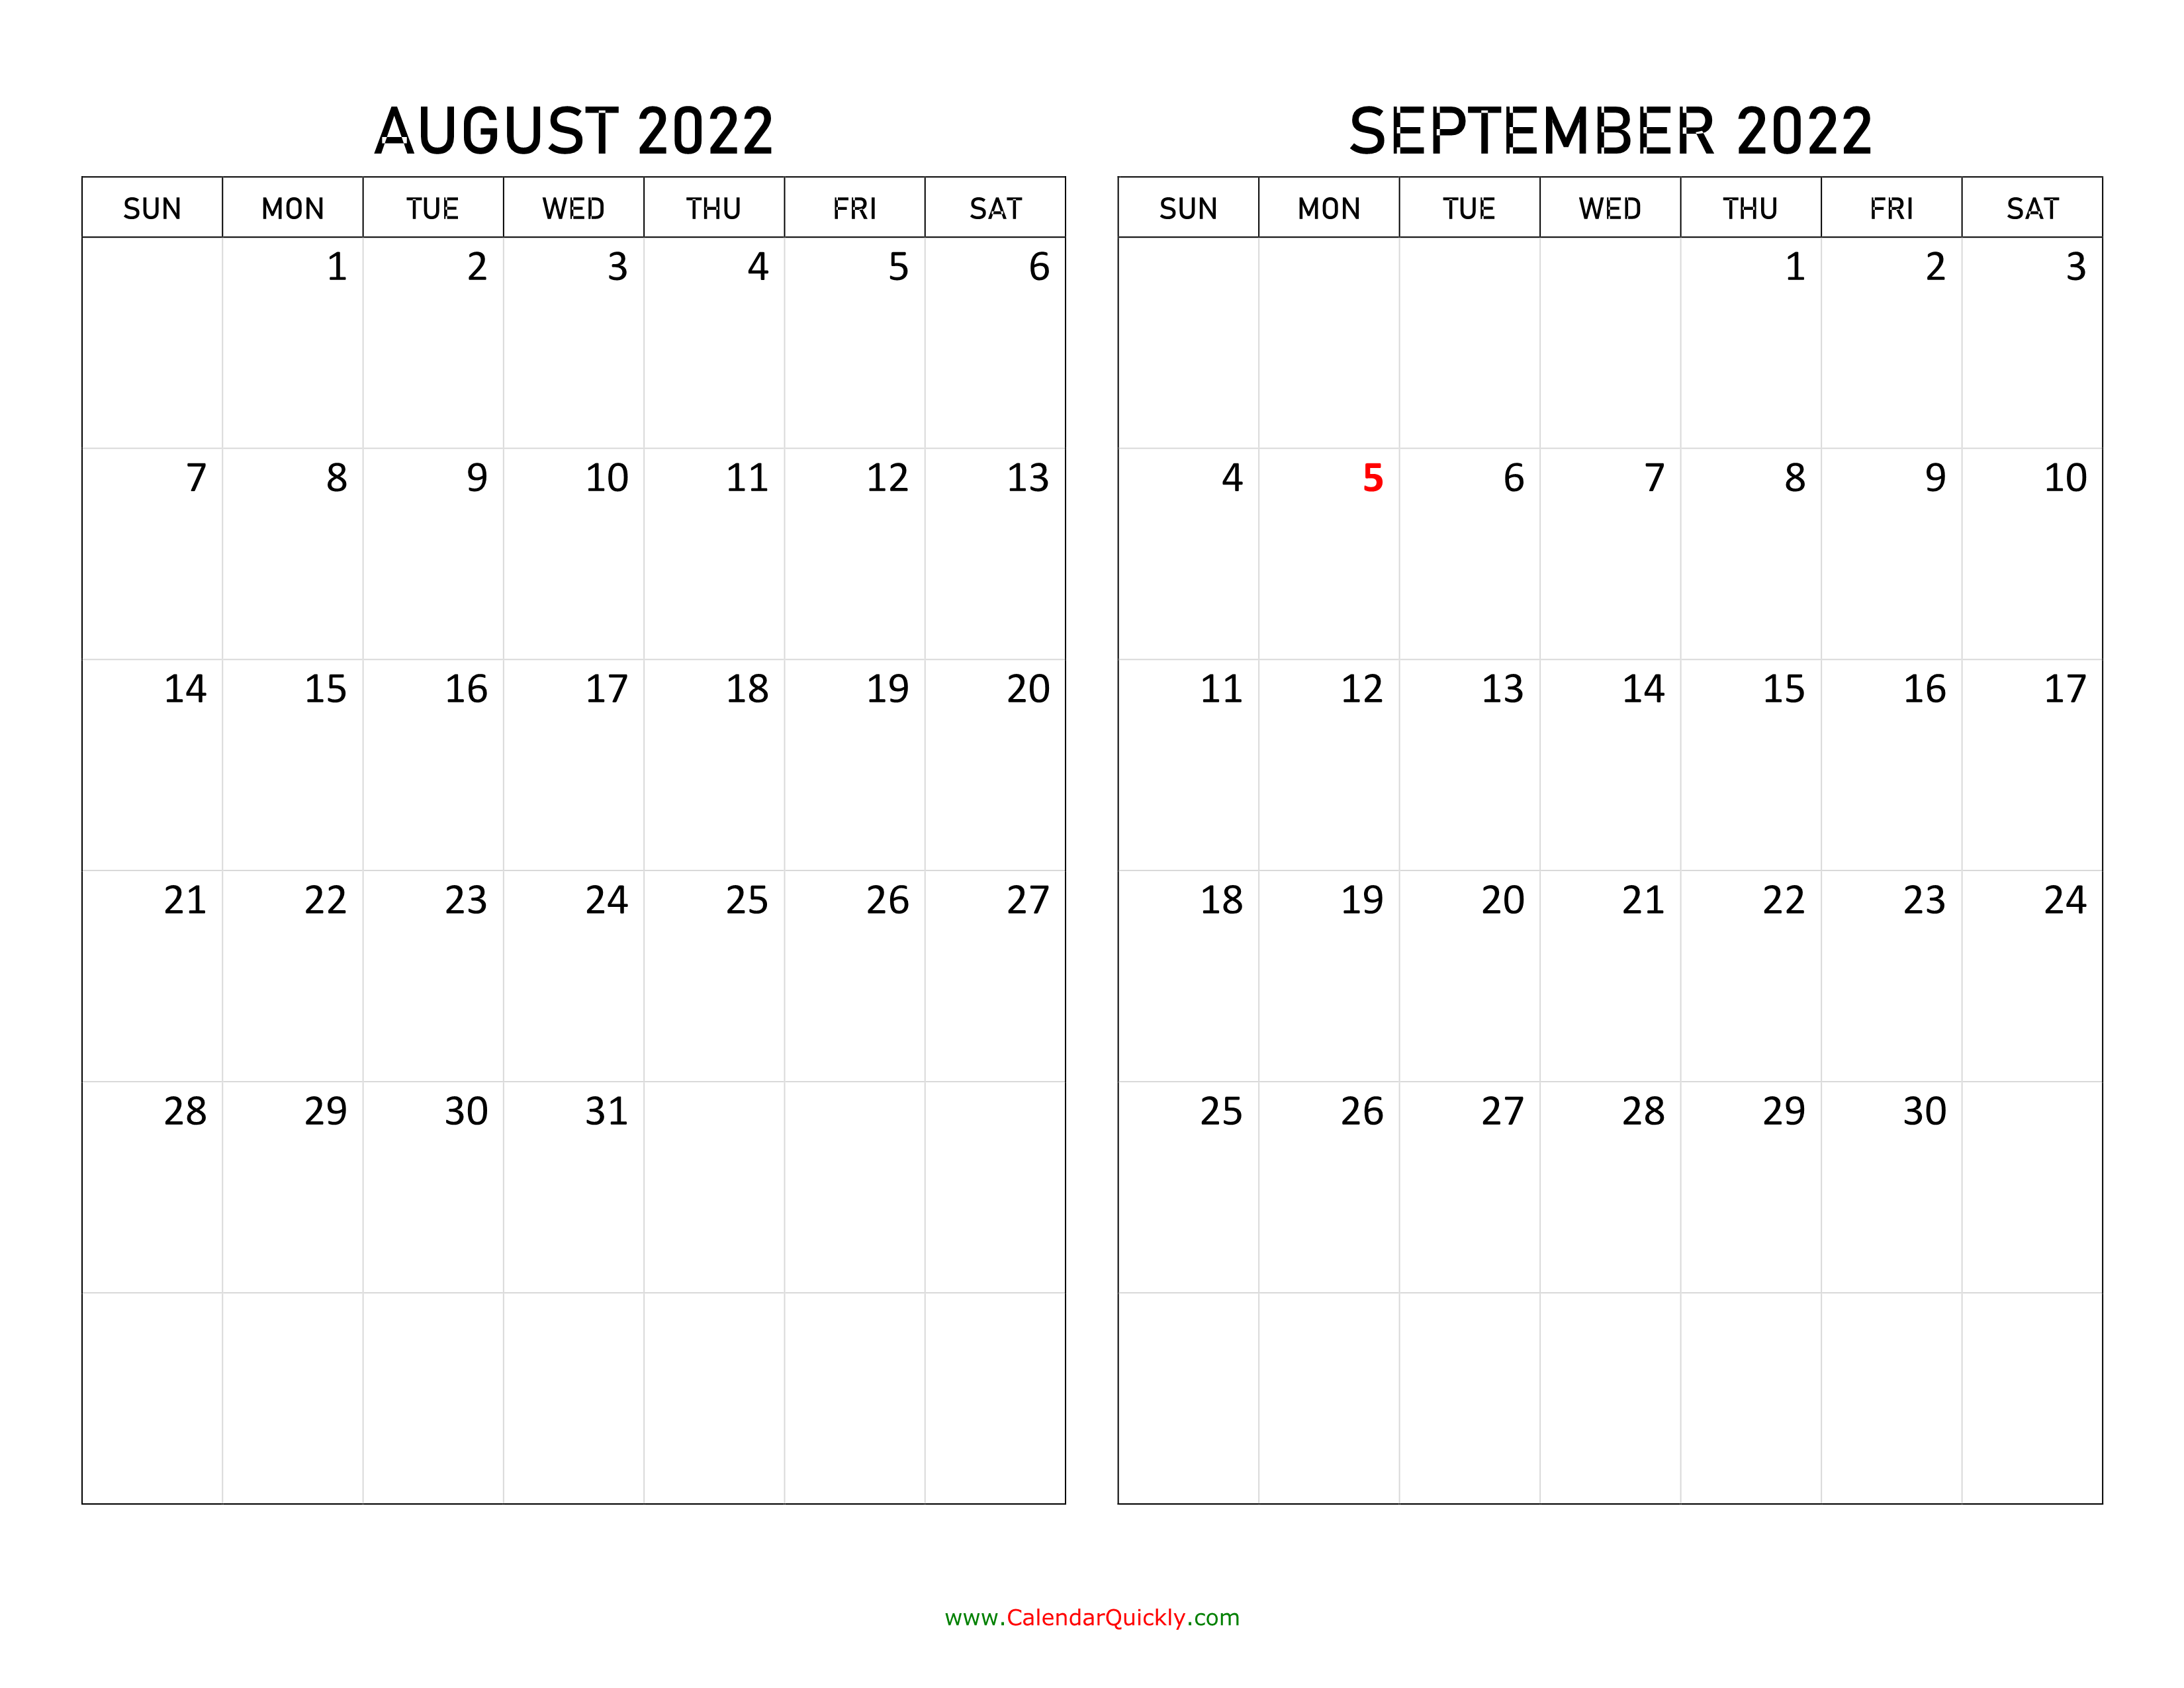 Календарь август сентябрь. Календарь август сентябрь октябрь 2022 года. Июль 2023. Календарь июль 2022. Календарь август сентябрь 2023.